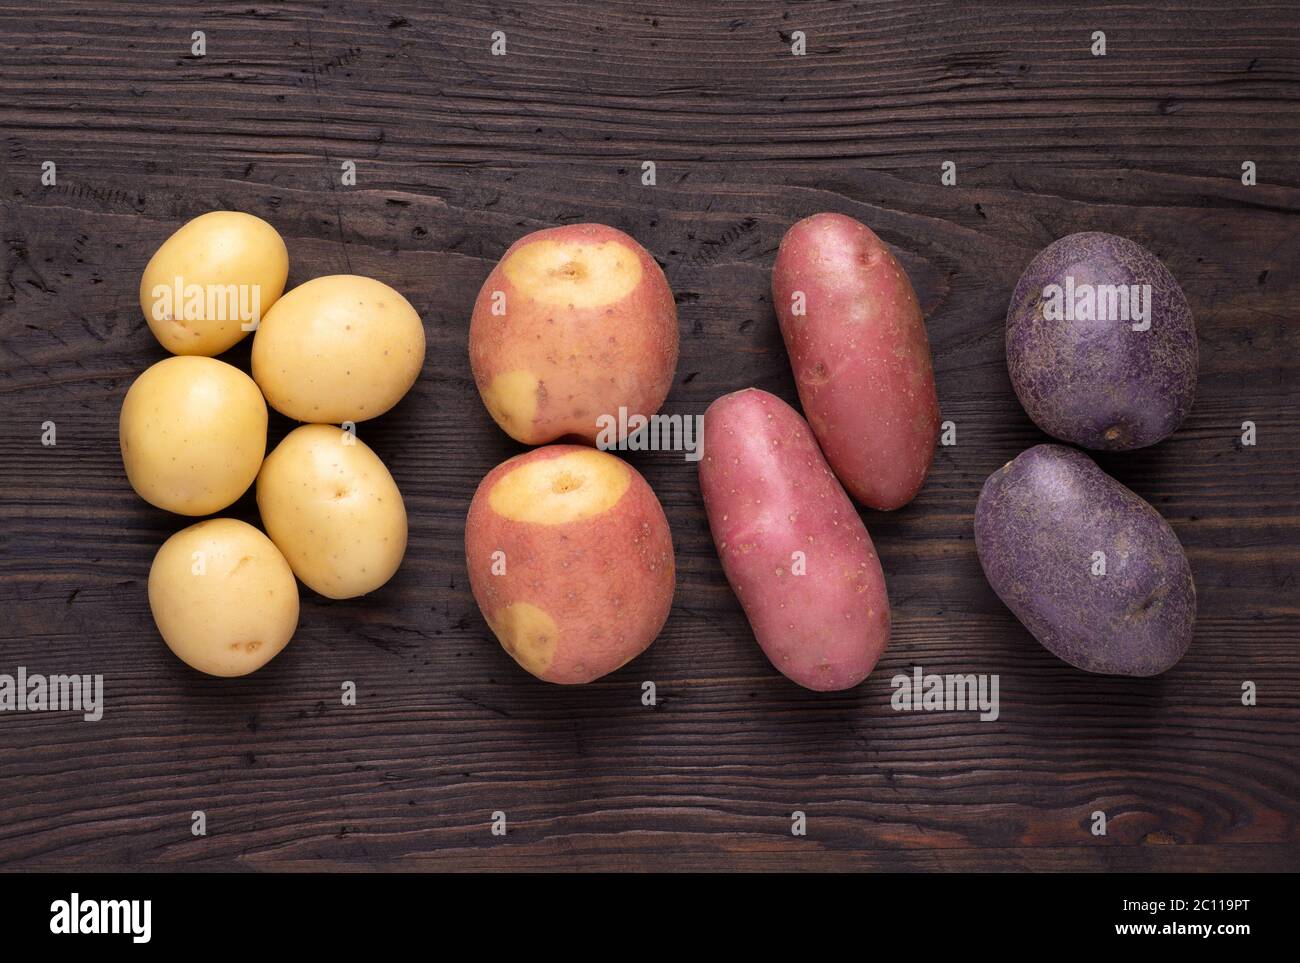 Différents types de pommes de terre sur table rustique en bois sombre Banque D'Images